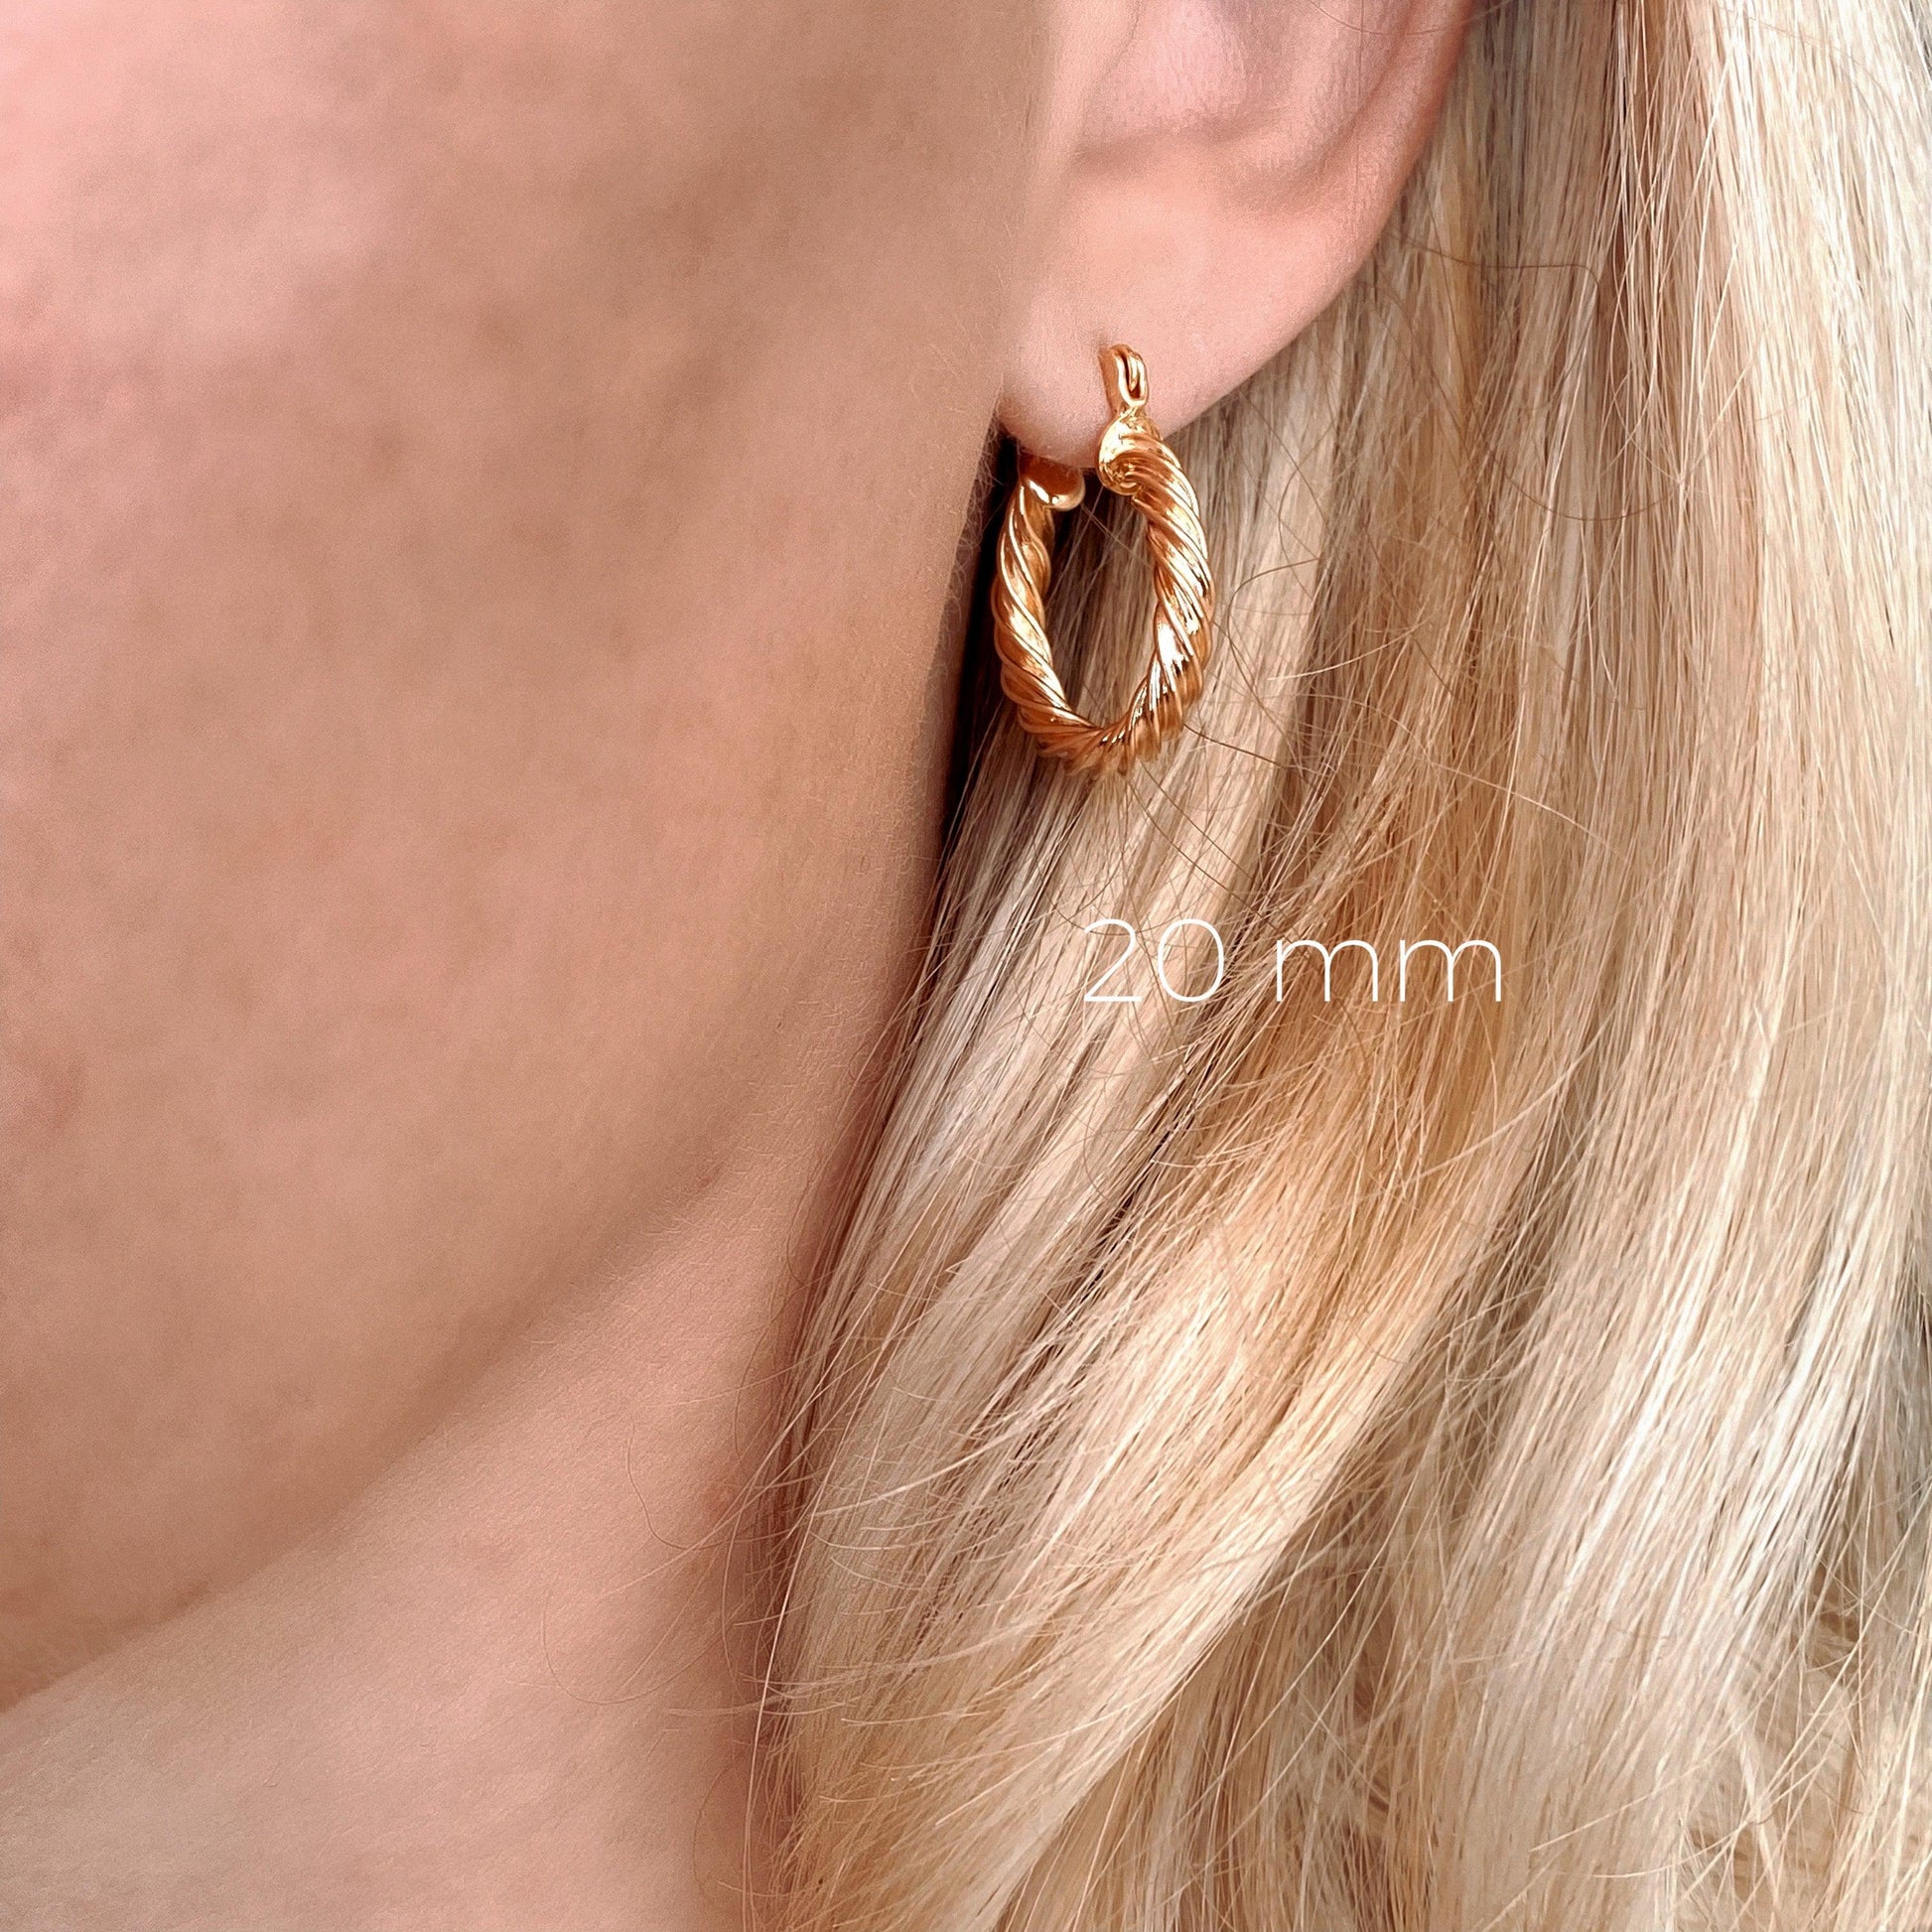 GoldFi 18k Gold Filled 15mm Twisted Hoop Earrings